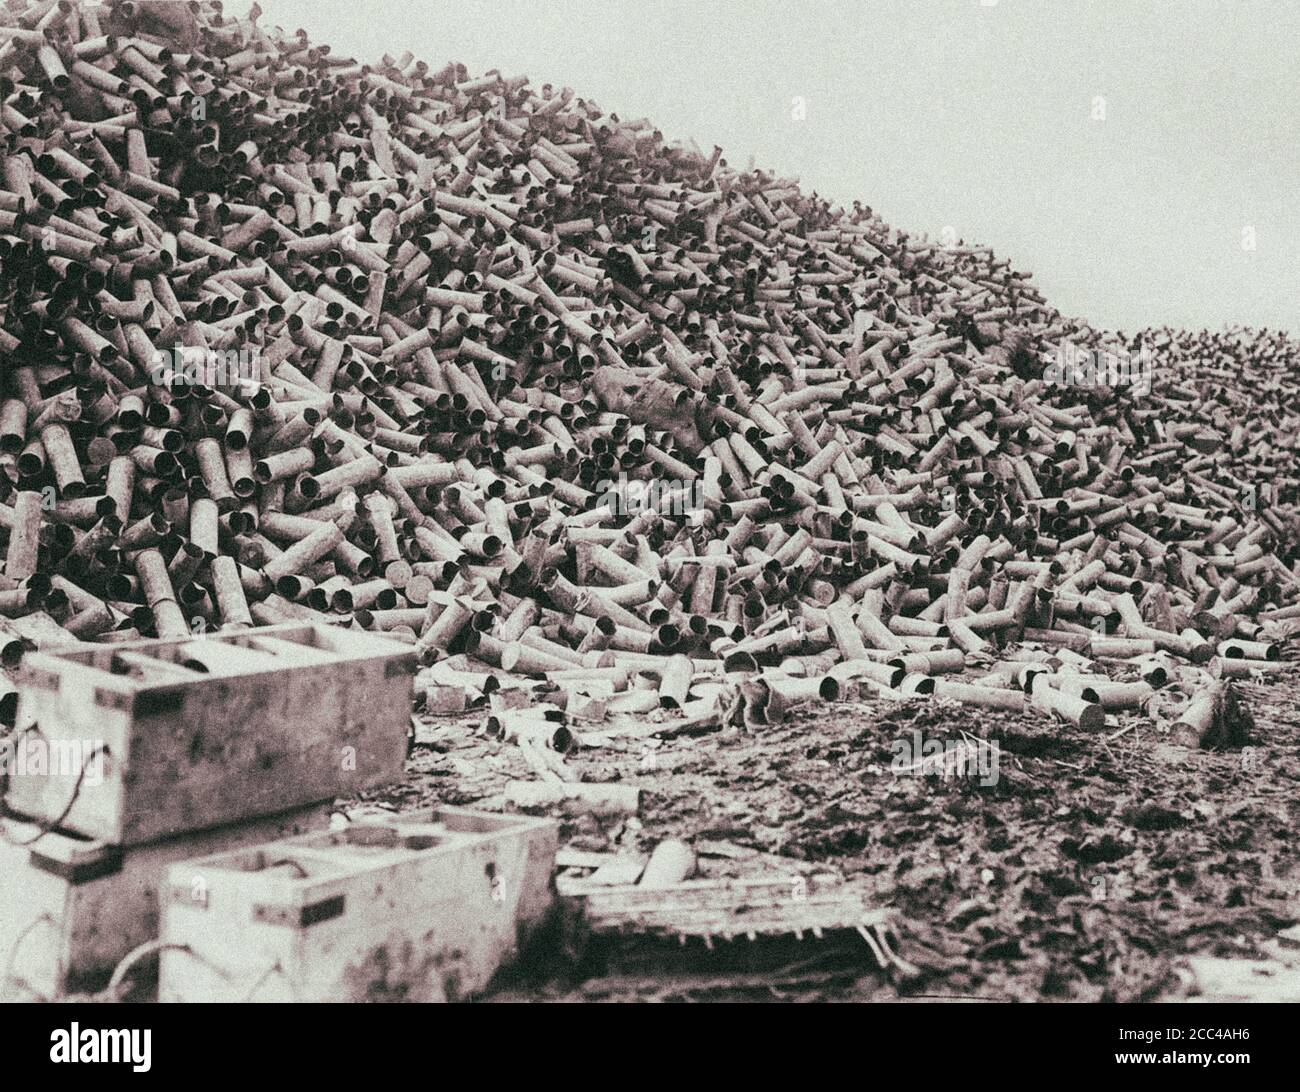 Der Worlkrieg I. Schlacht an der Somme. Der riesige Stapel von Gehäusen aus den Muscheln. In der Woche vor der Schlacht wurden über 1.5 Millionen Granaten Feuer Stockfoto